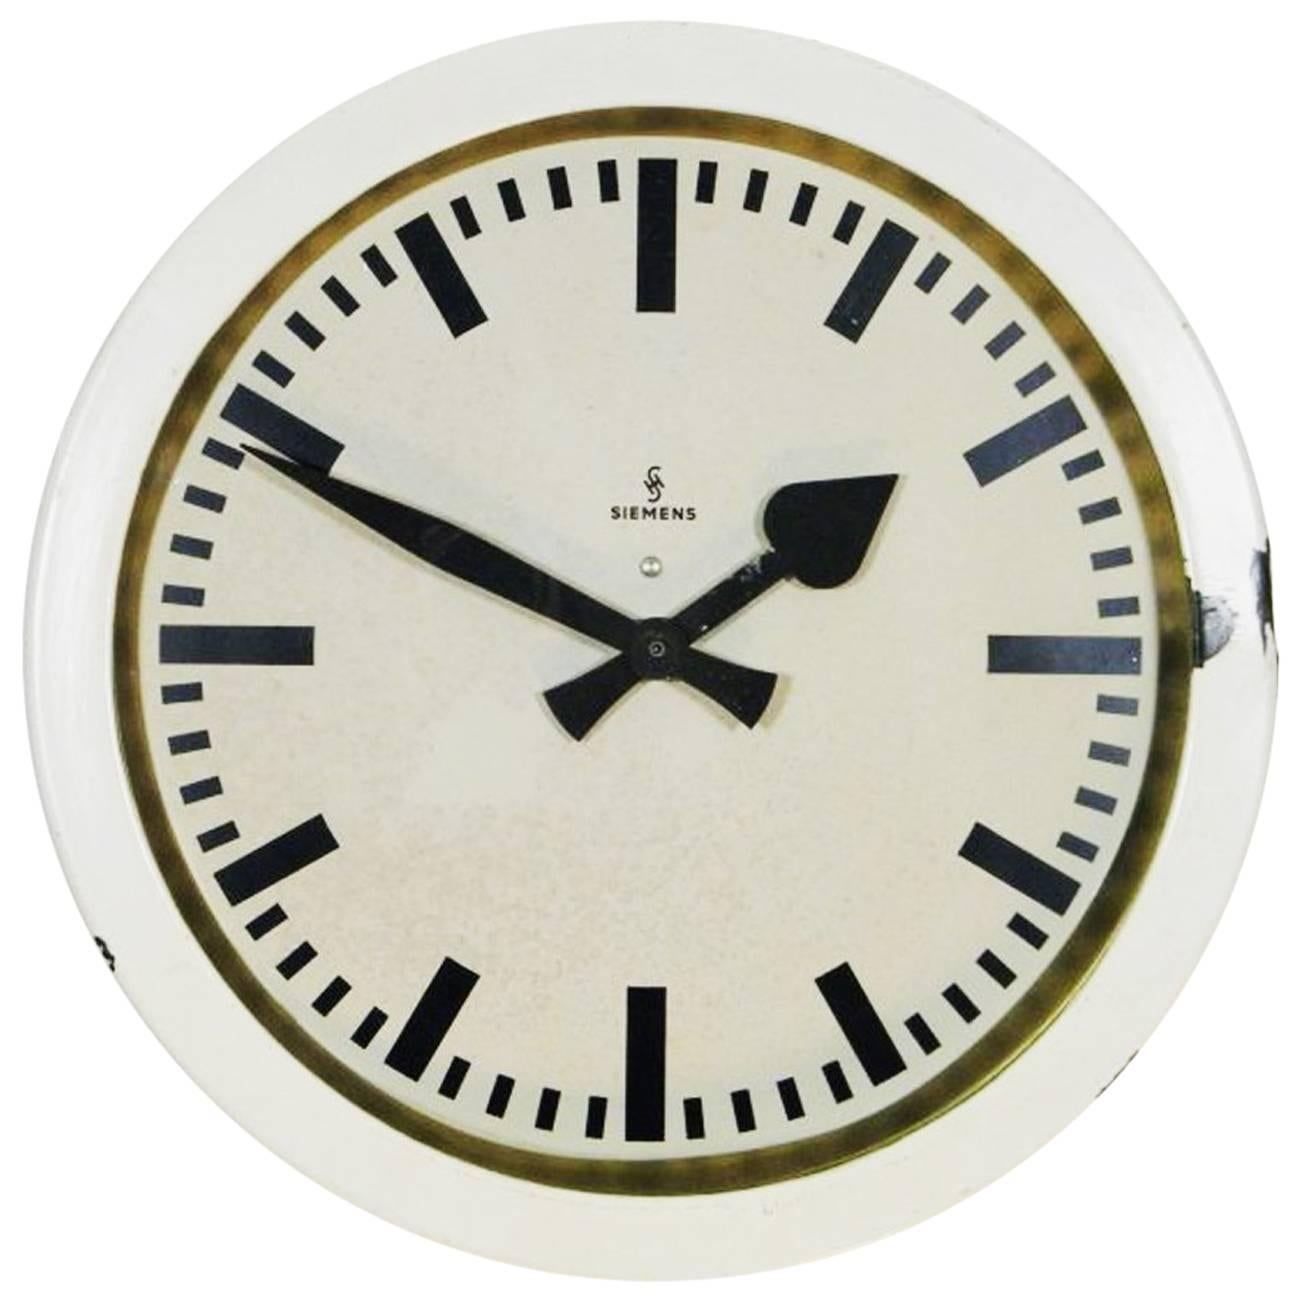 Siemens Halske Factory, Workshop or Train Station Clock For Sale